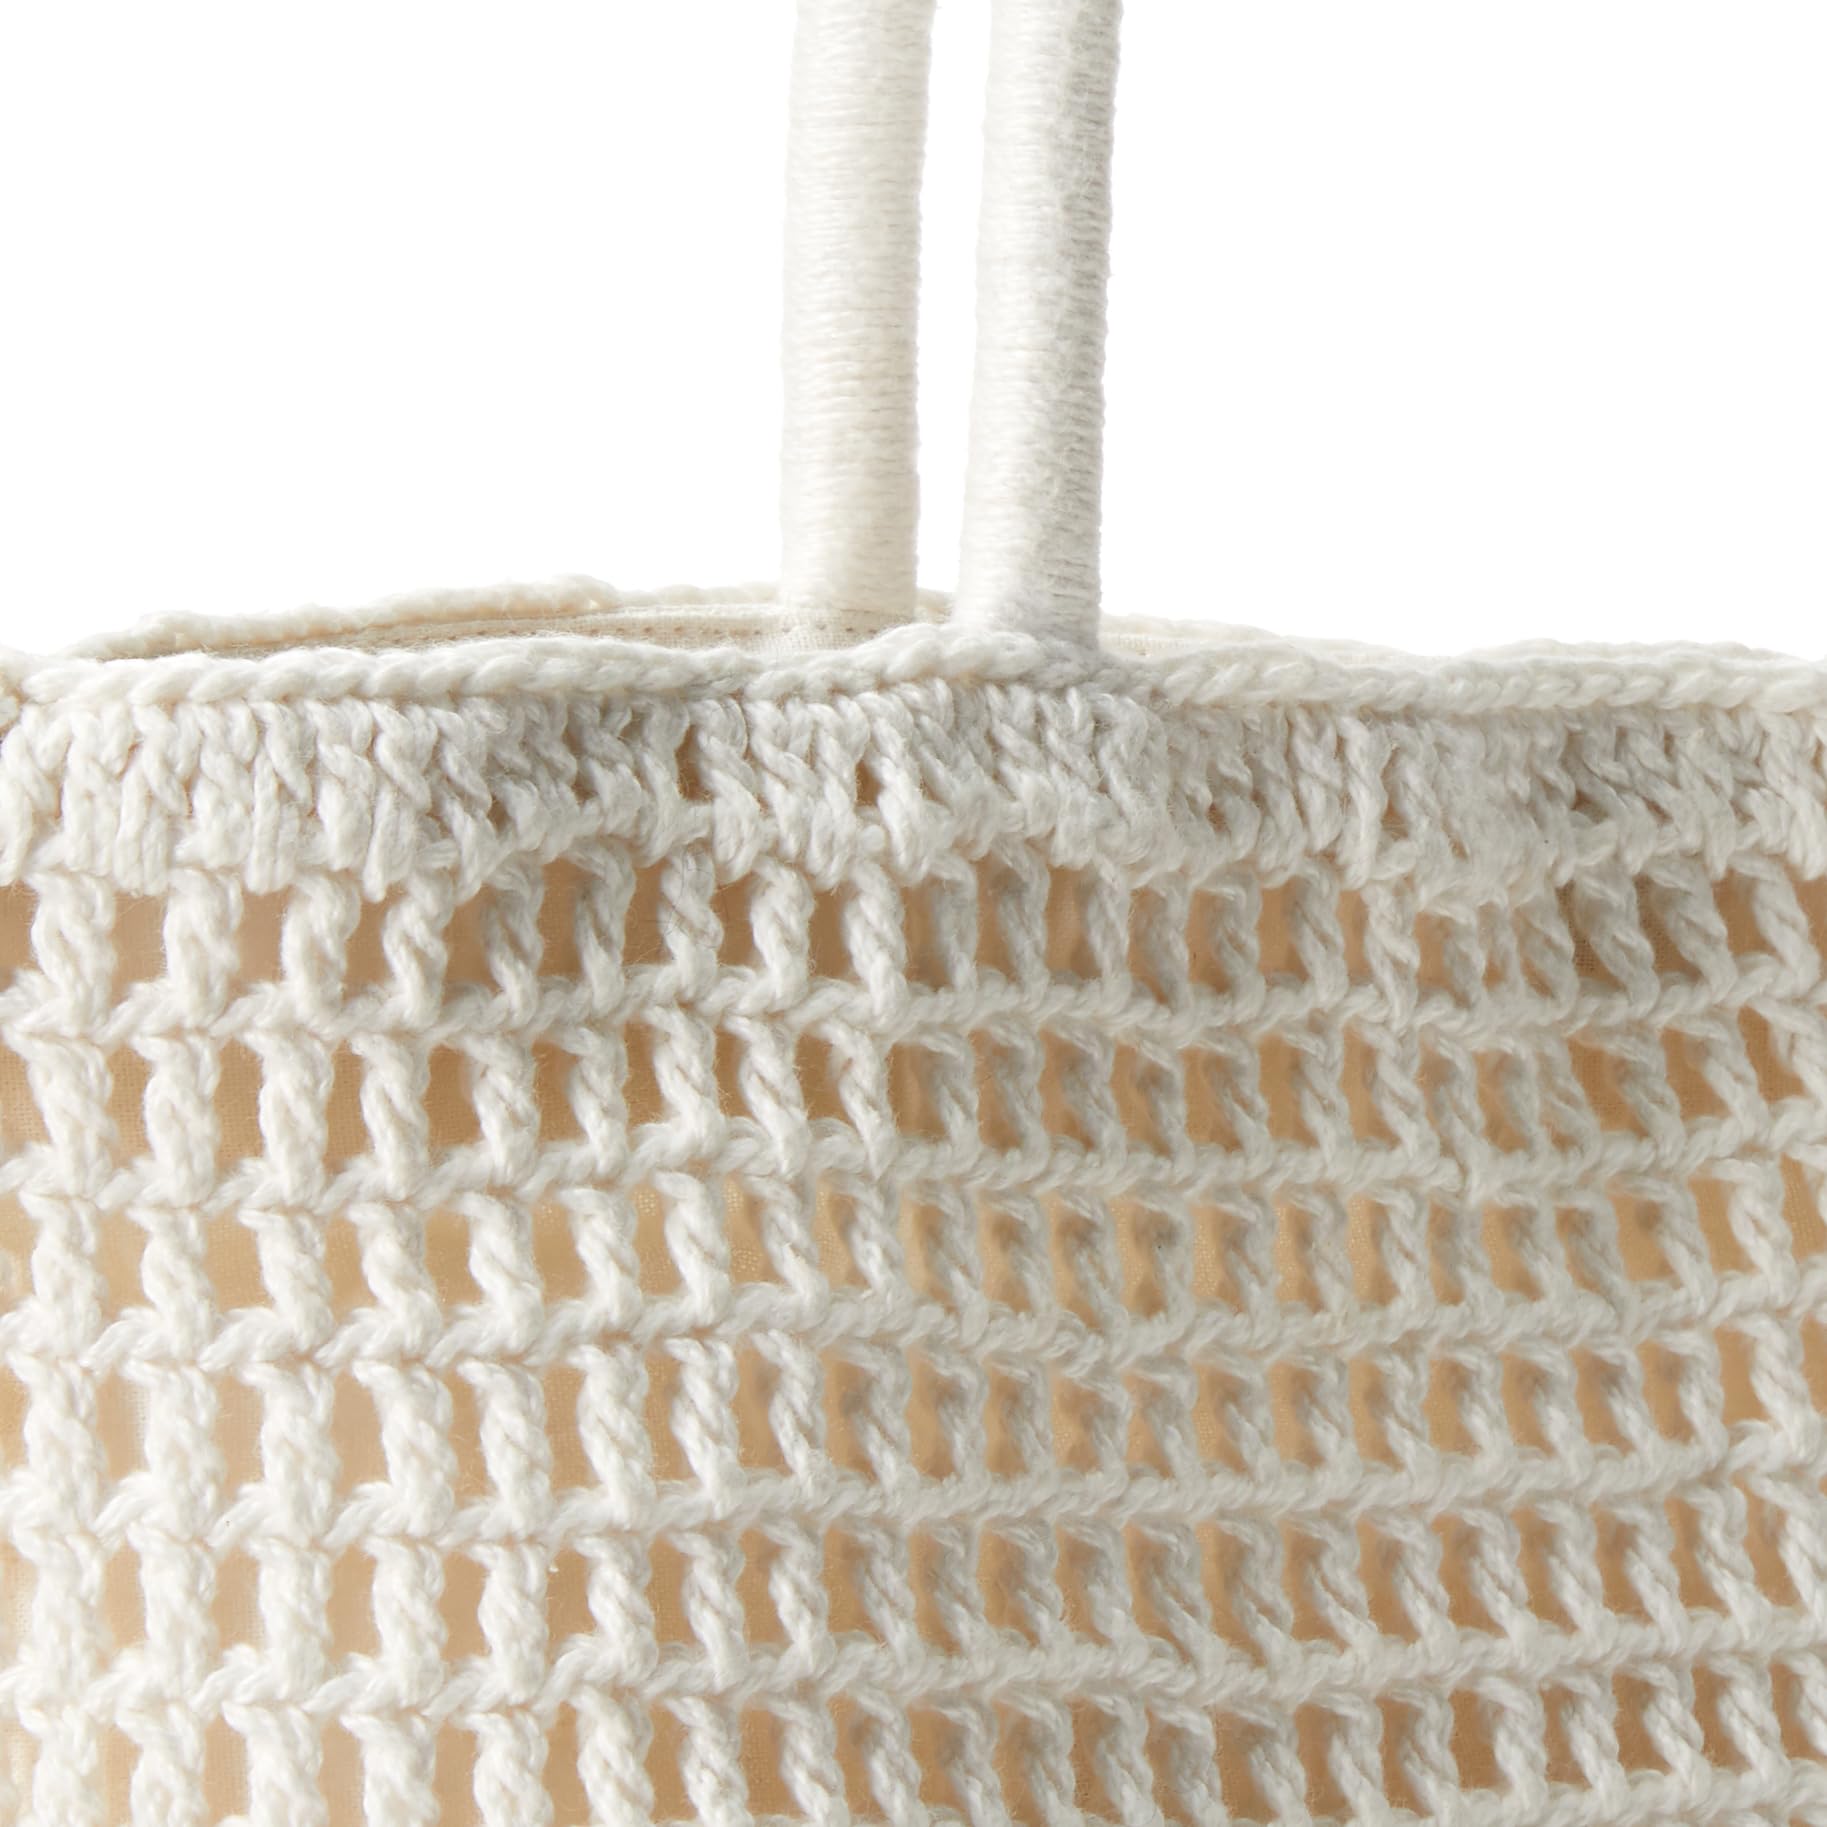 The Drop Women's Alora Crochet Small Tote